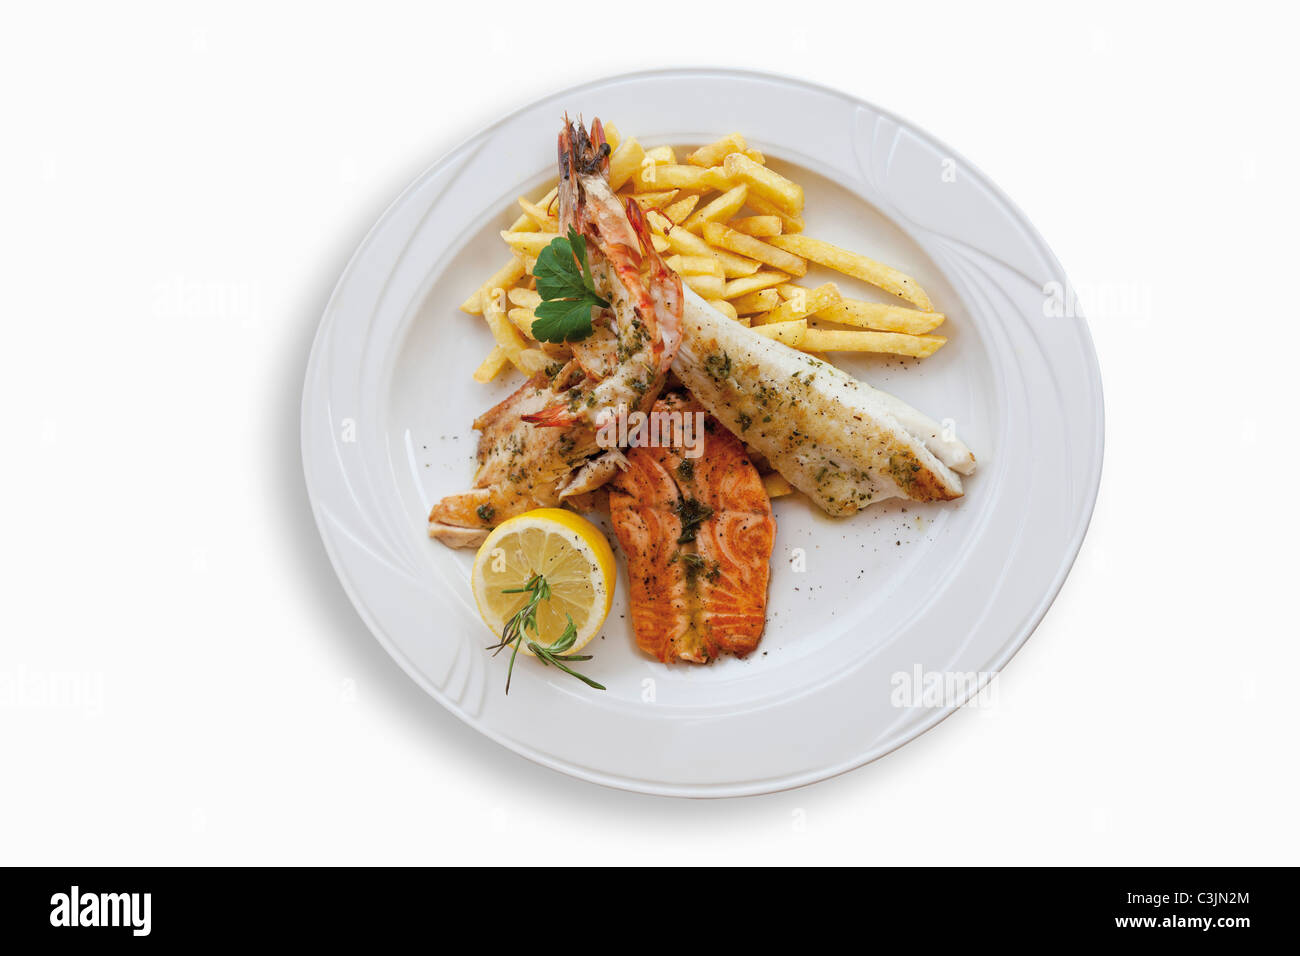 Plateau de poisson avec filet de sandre, filet de saumon, filet de loup de mer, langoustines et frites dans la plaque Banque D'Images